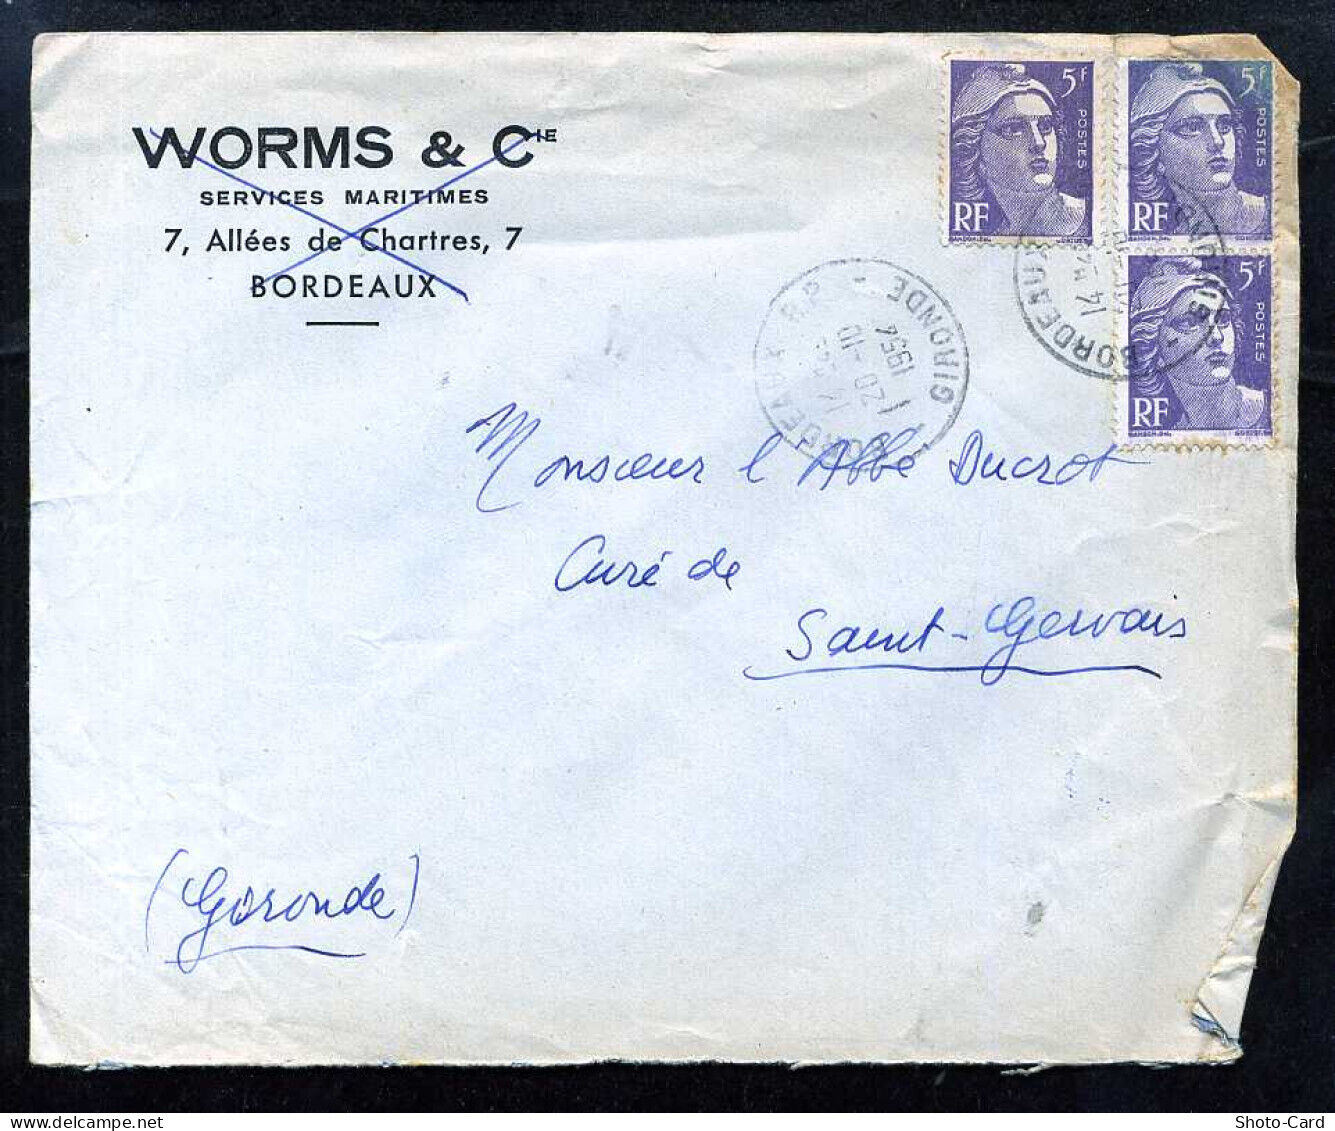 env pub worms Bordeaux 1954